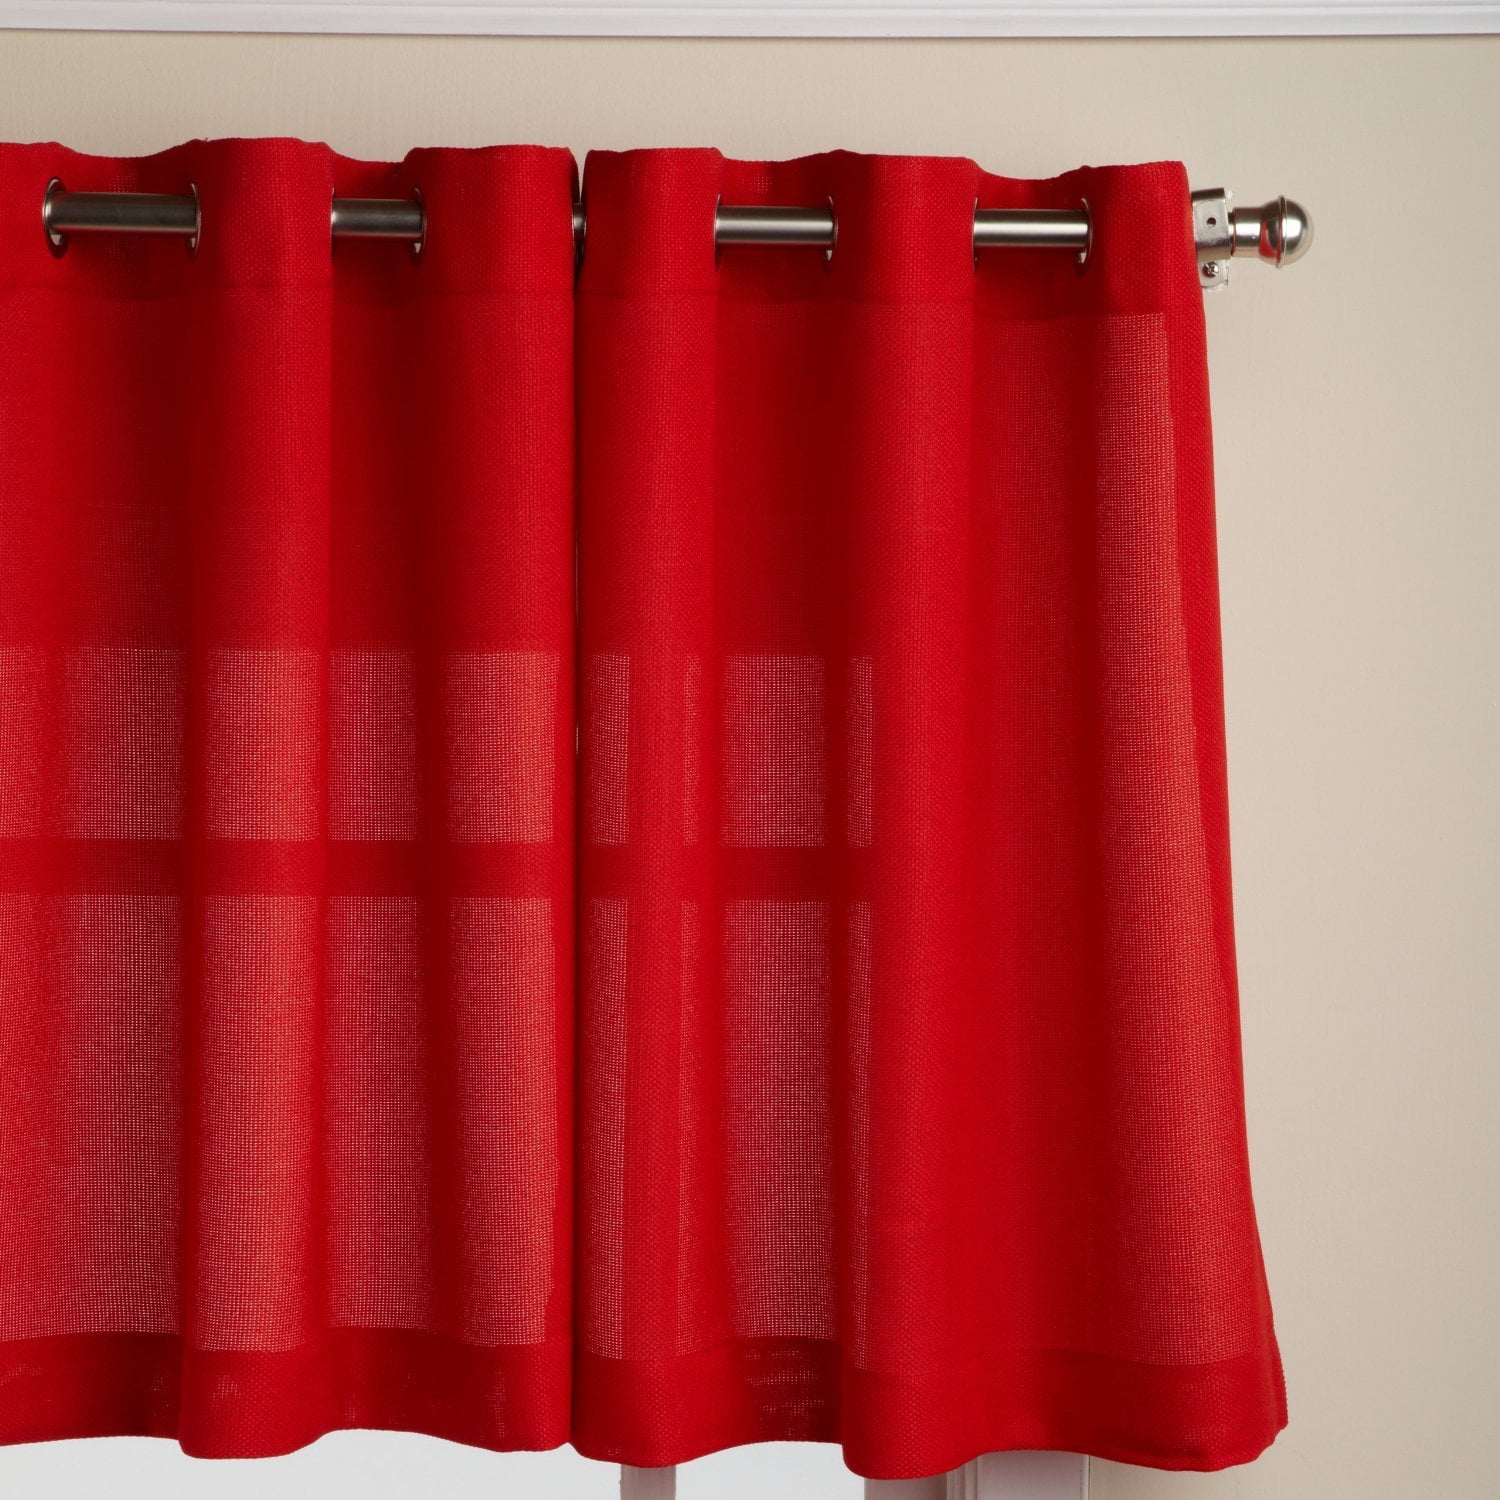 58 x 24 Chocolate Jackson 58 x 36-inch Tier Curtain Pair LORRAINE HOME FASHIONS